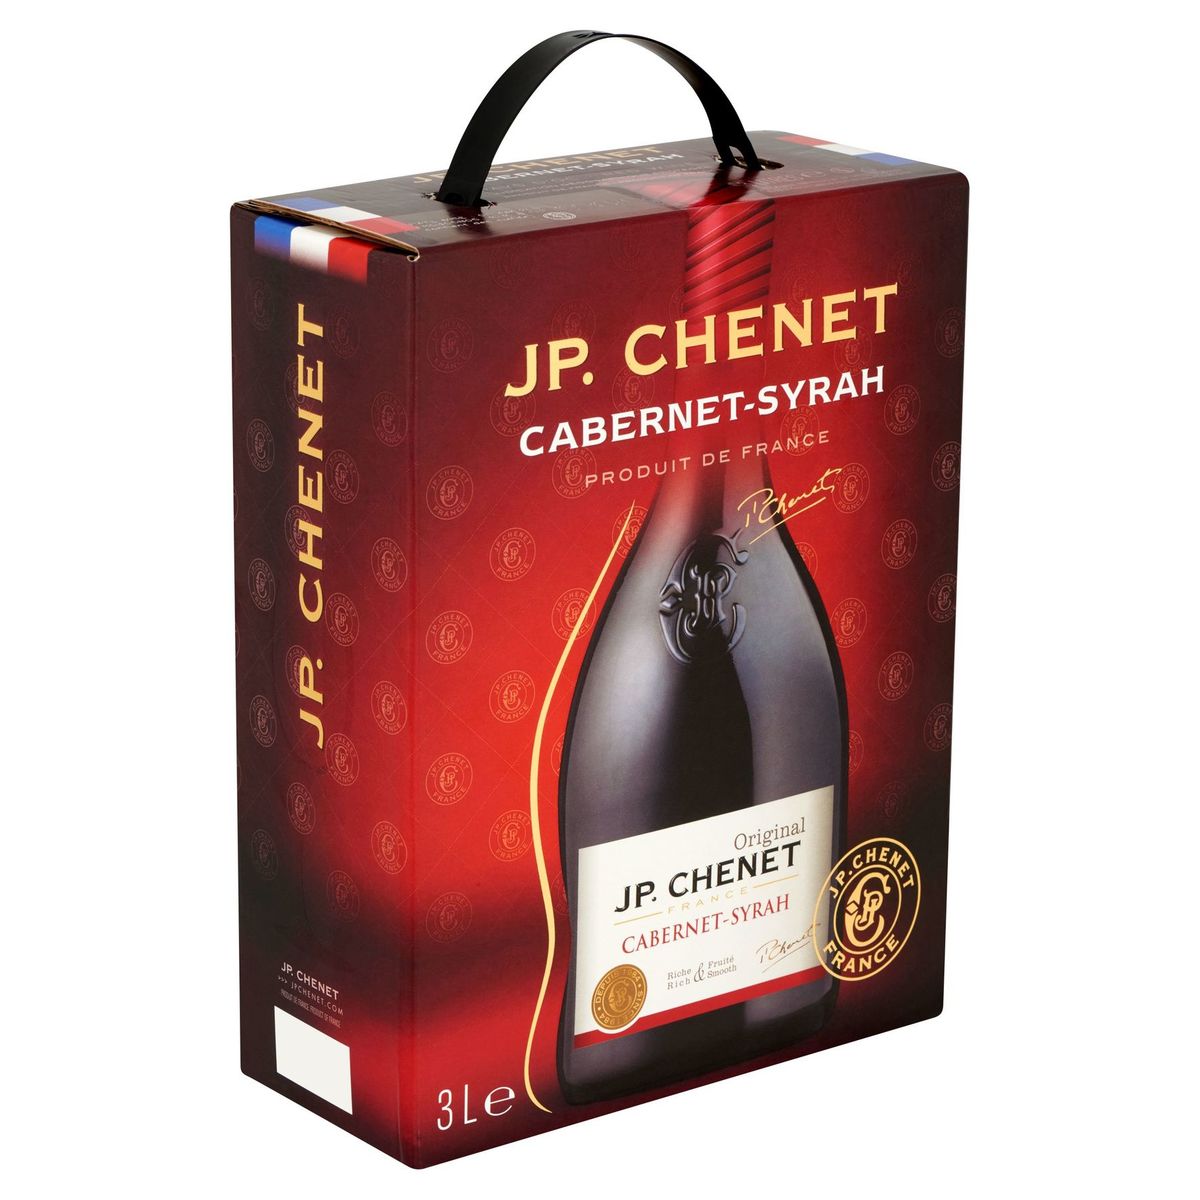 J.P. Chenet Cabernet-Syrah 3 L